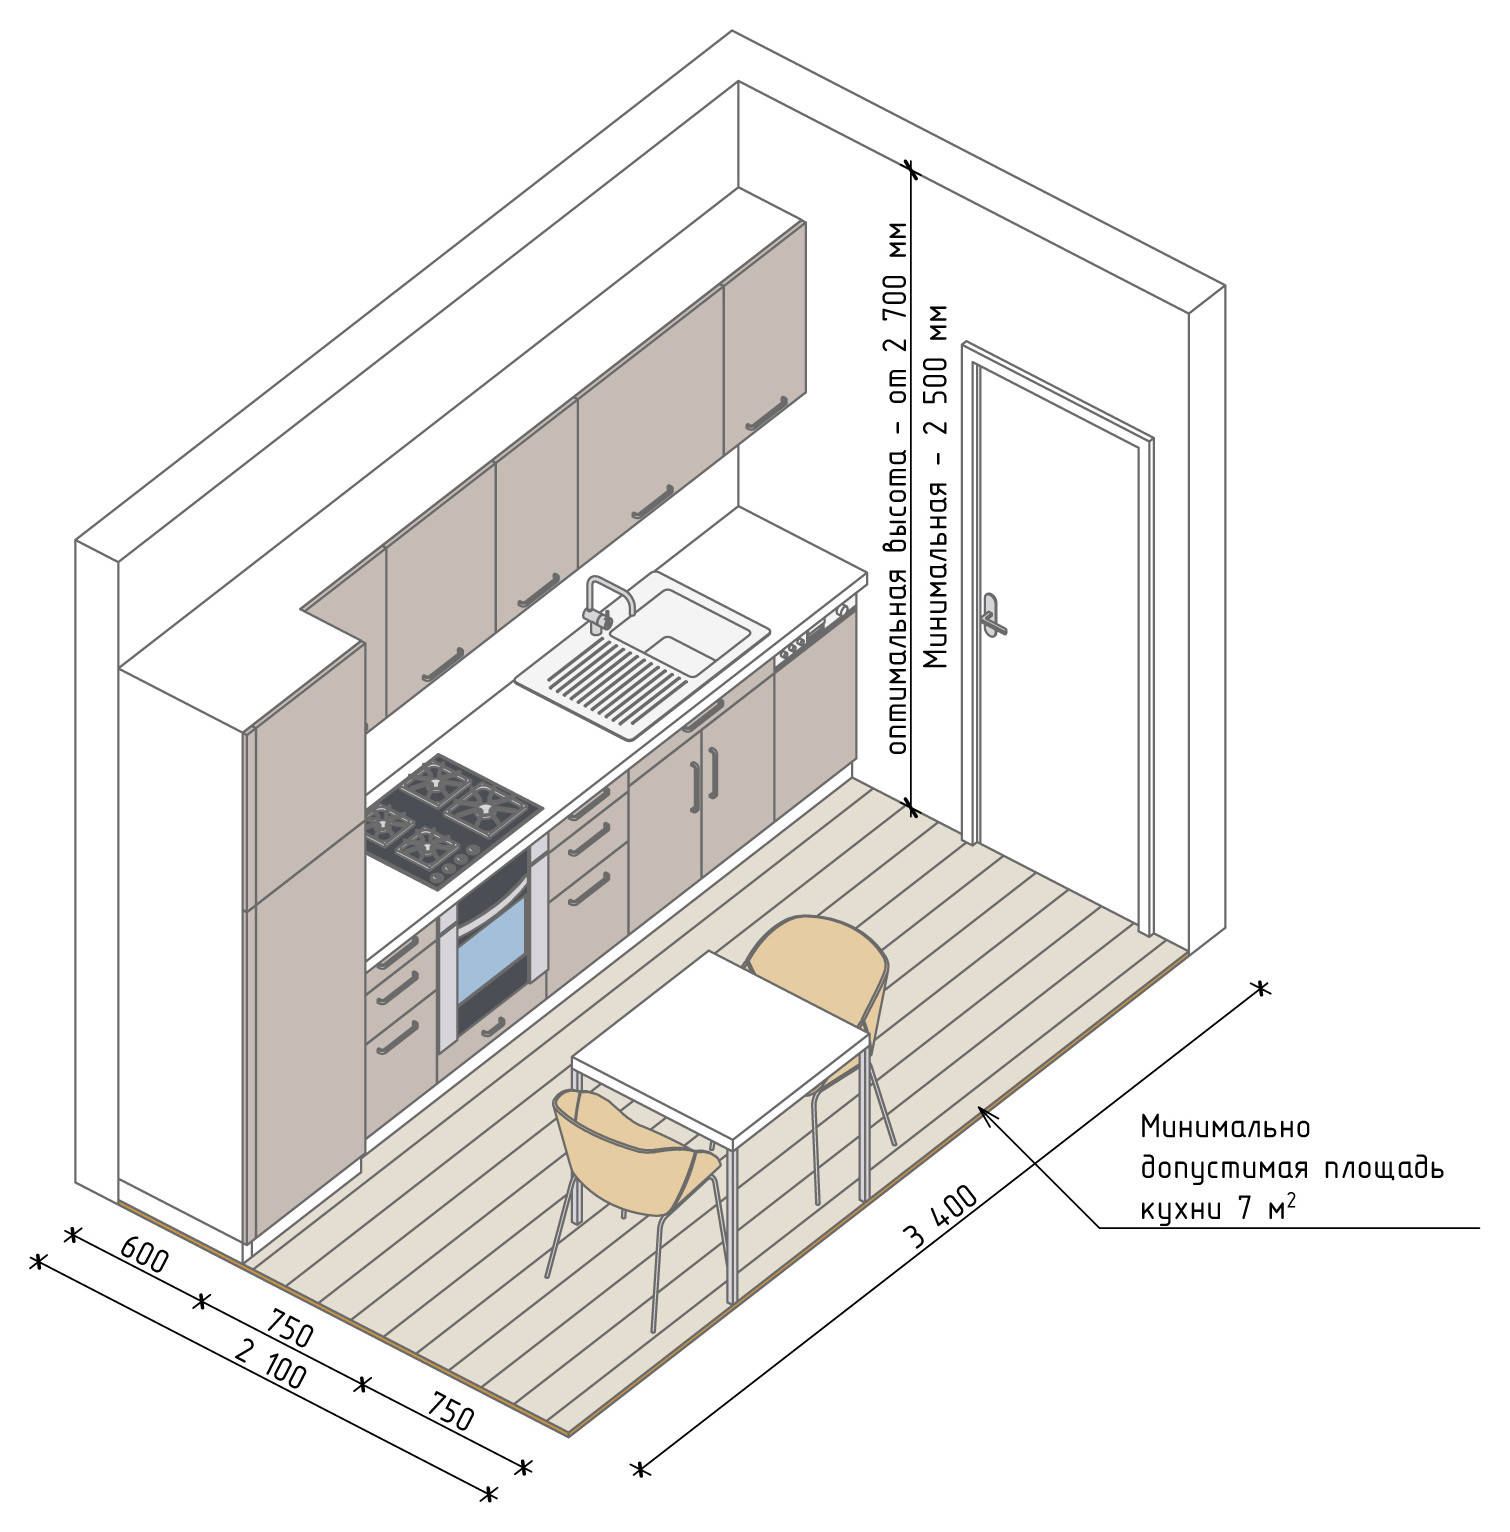 10 продуманных интерьеров с узкой кухней. Как спланировать помещение и подобрать мебель?